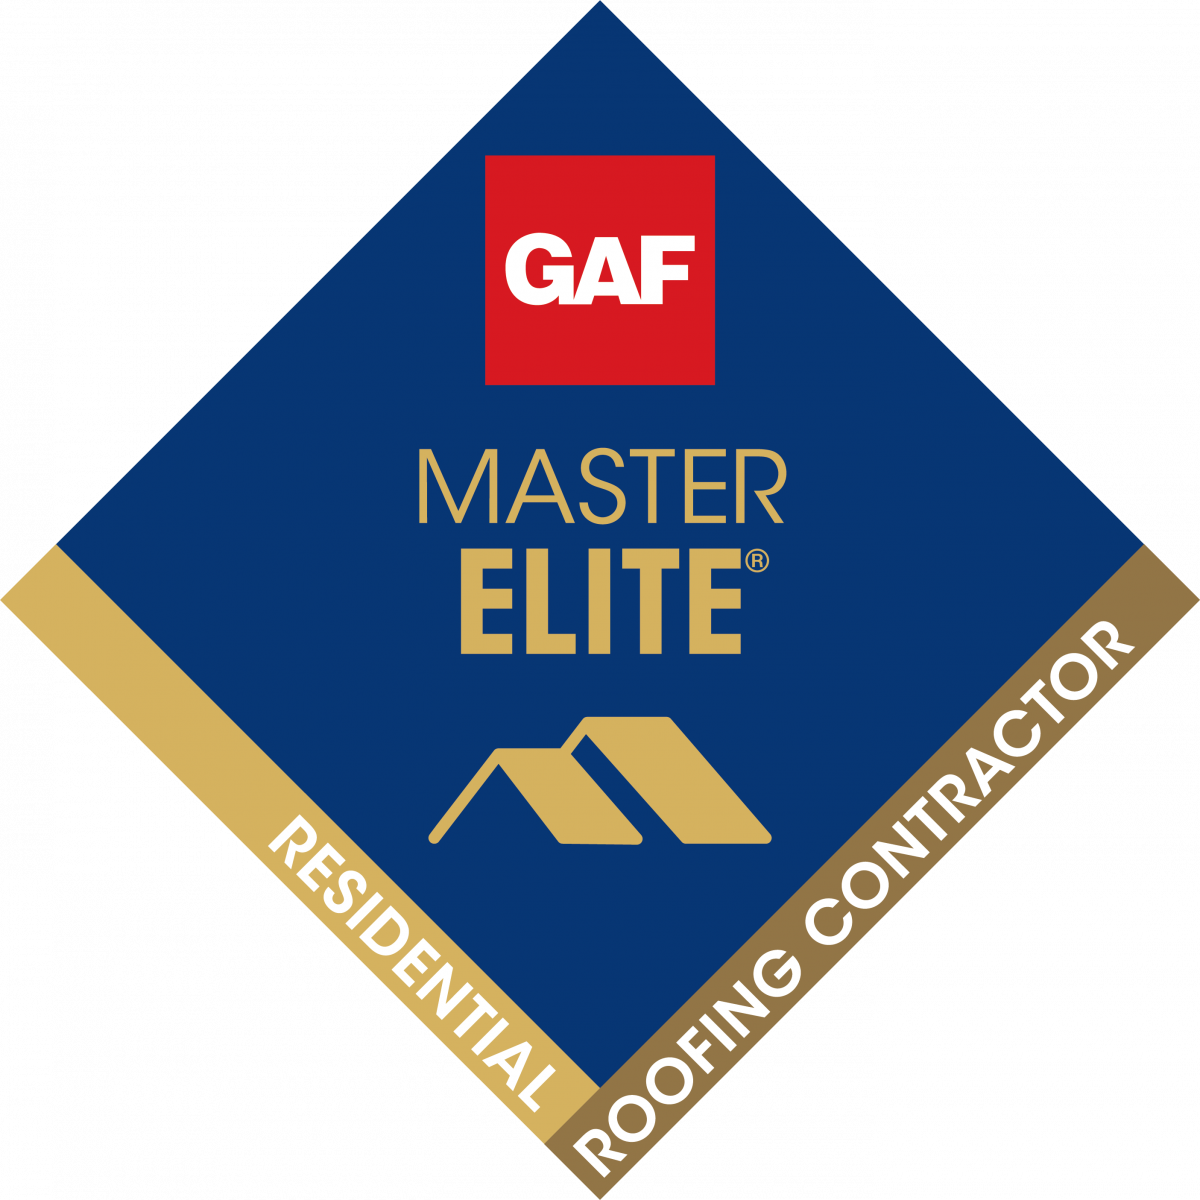 GAF Master Elite Contractor logo